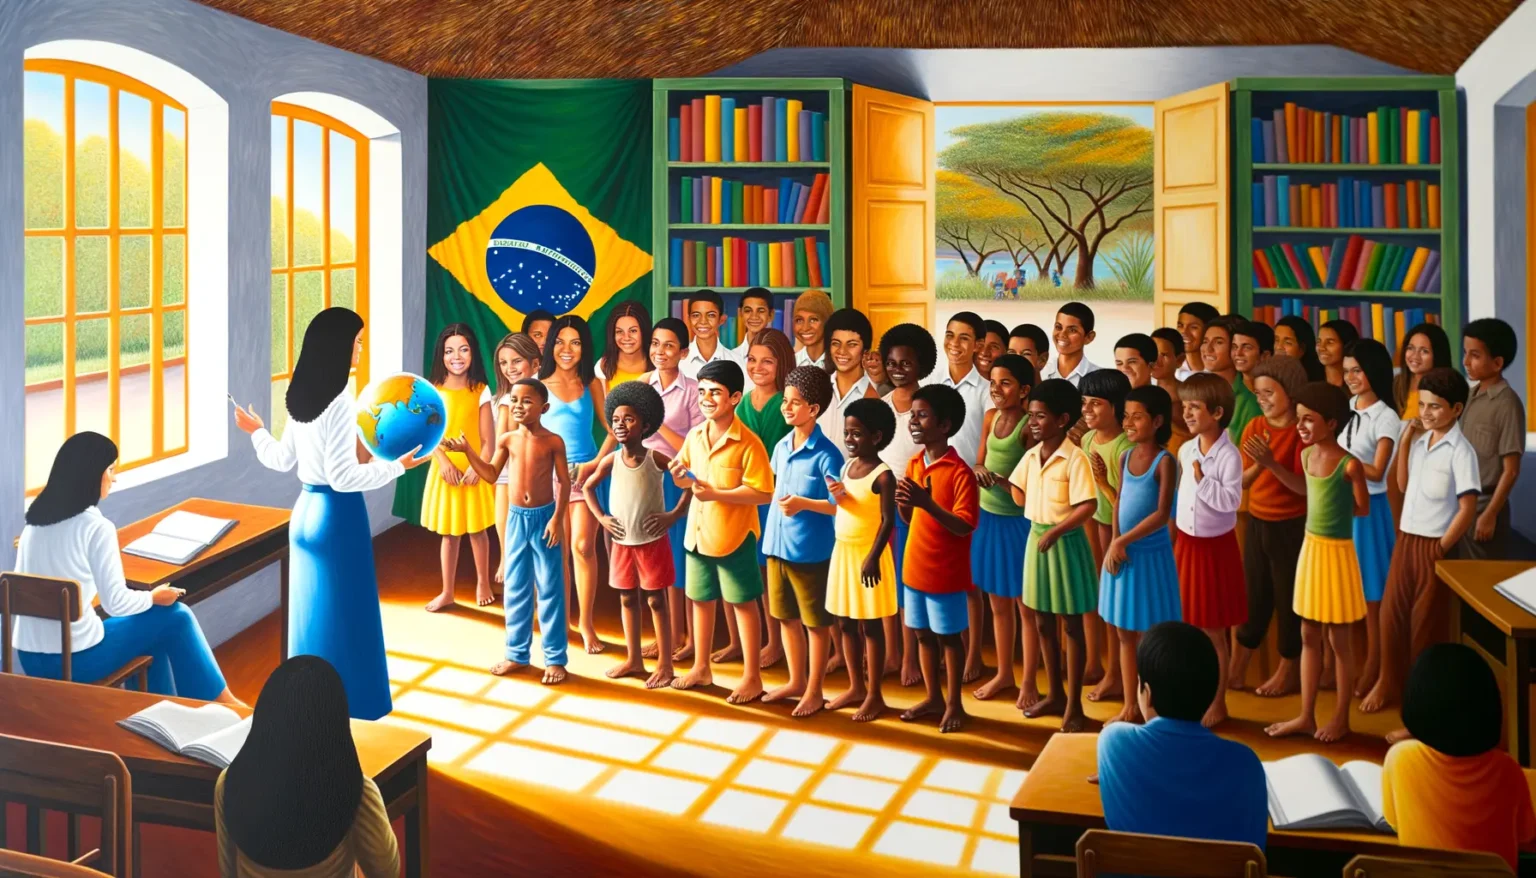 Eine kunstvolle Darstellung eines Klassenzimmers mit einer diversen Gruppe von Schülerinnen und Schülern unterschiedlichen Alters und Kulthintergründe, die lächelnd einer Lehrerin zuhören. Die Lehrerin hält einen Globus und deutet auf die brasilianische Flagge, die im Hintergrund hängt. Das Zimmer ist lichtdurchflutet und von Bücherregalen umgeben, und draußen sind idyllische Landschaften sichtbar.